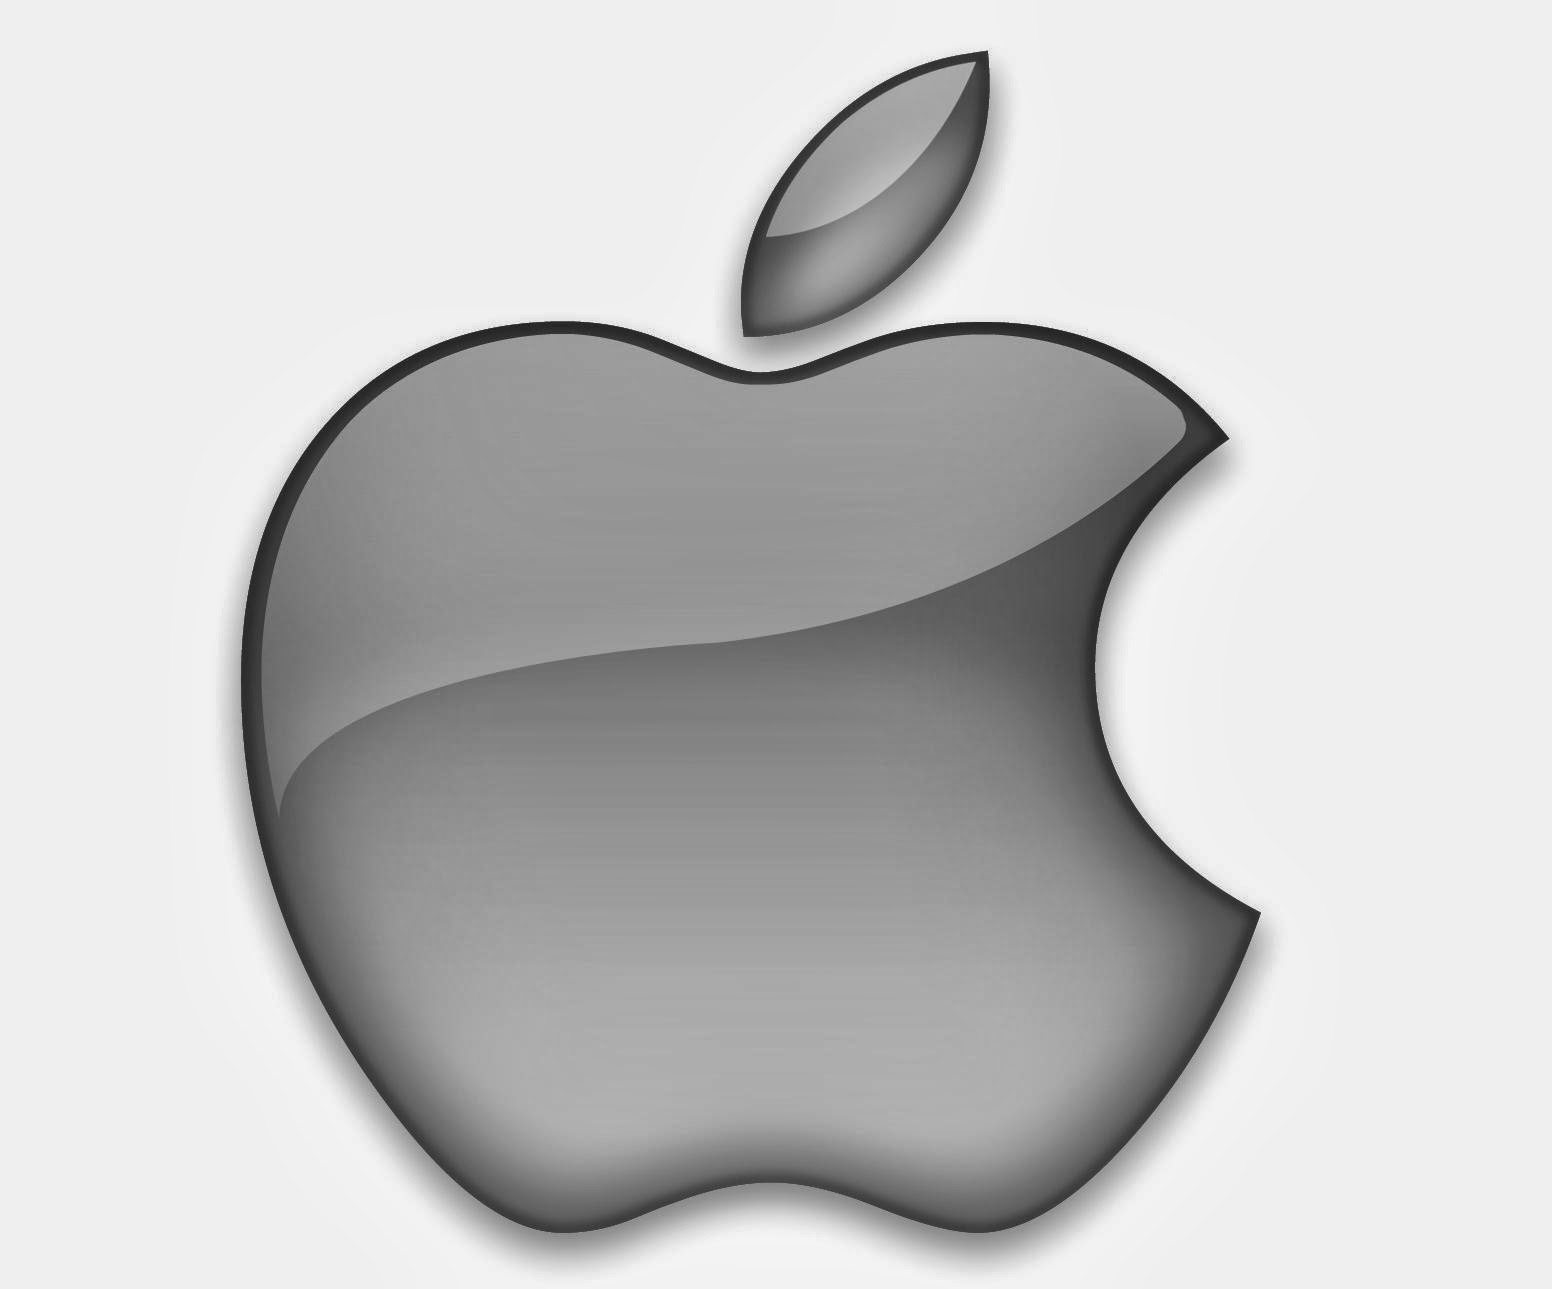 Observadores dizem que a Apple precisa de mais um sucesso como o IPAD 